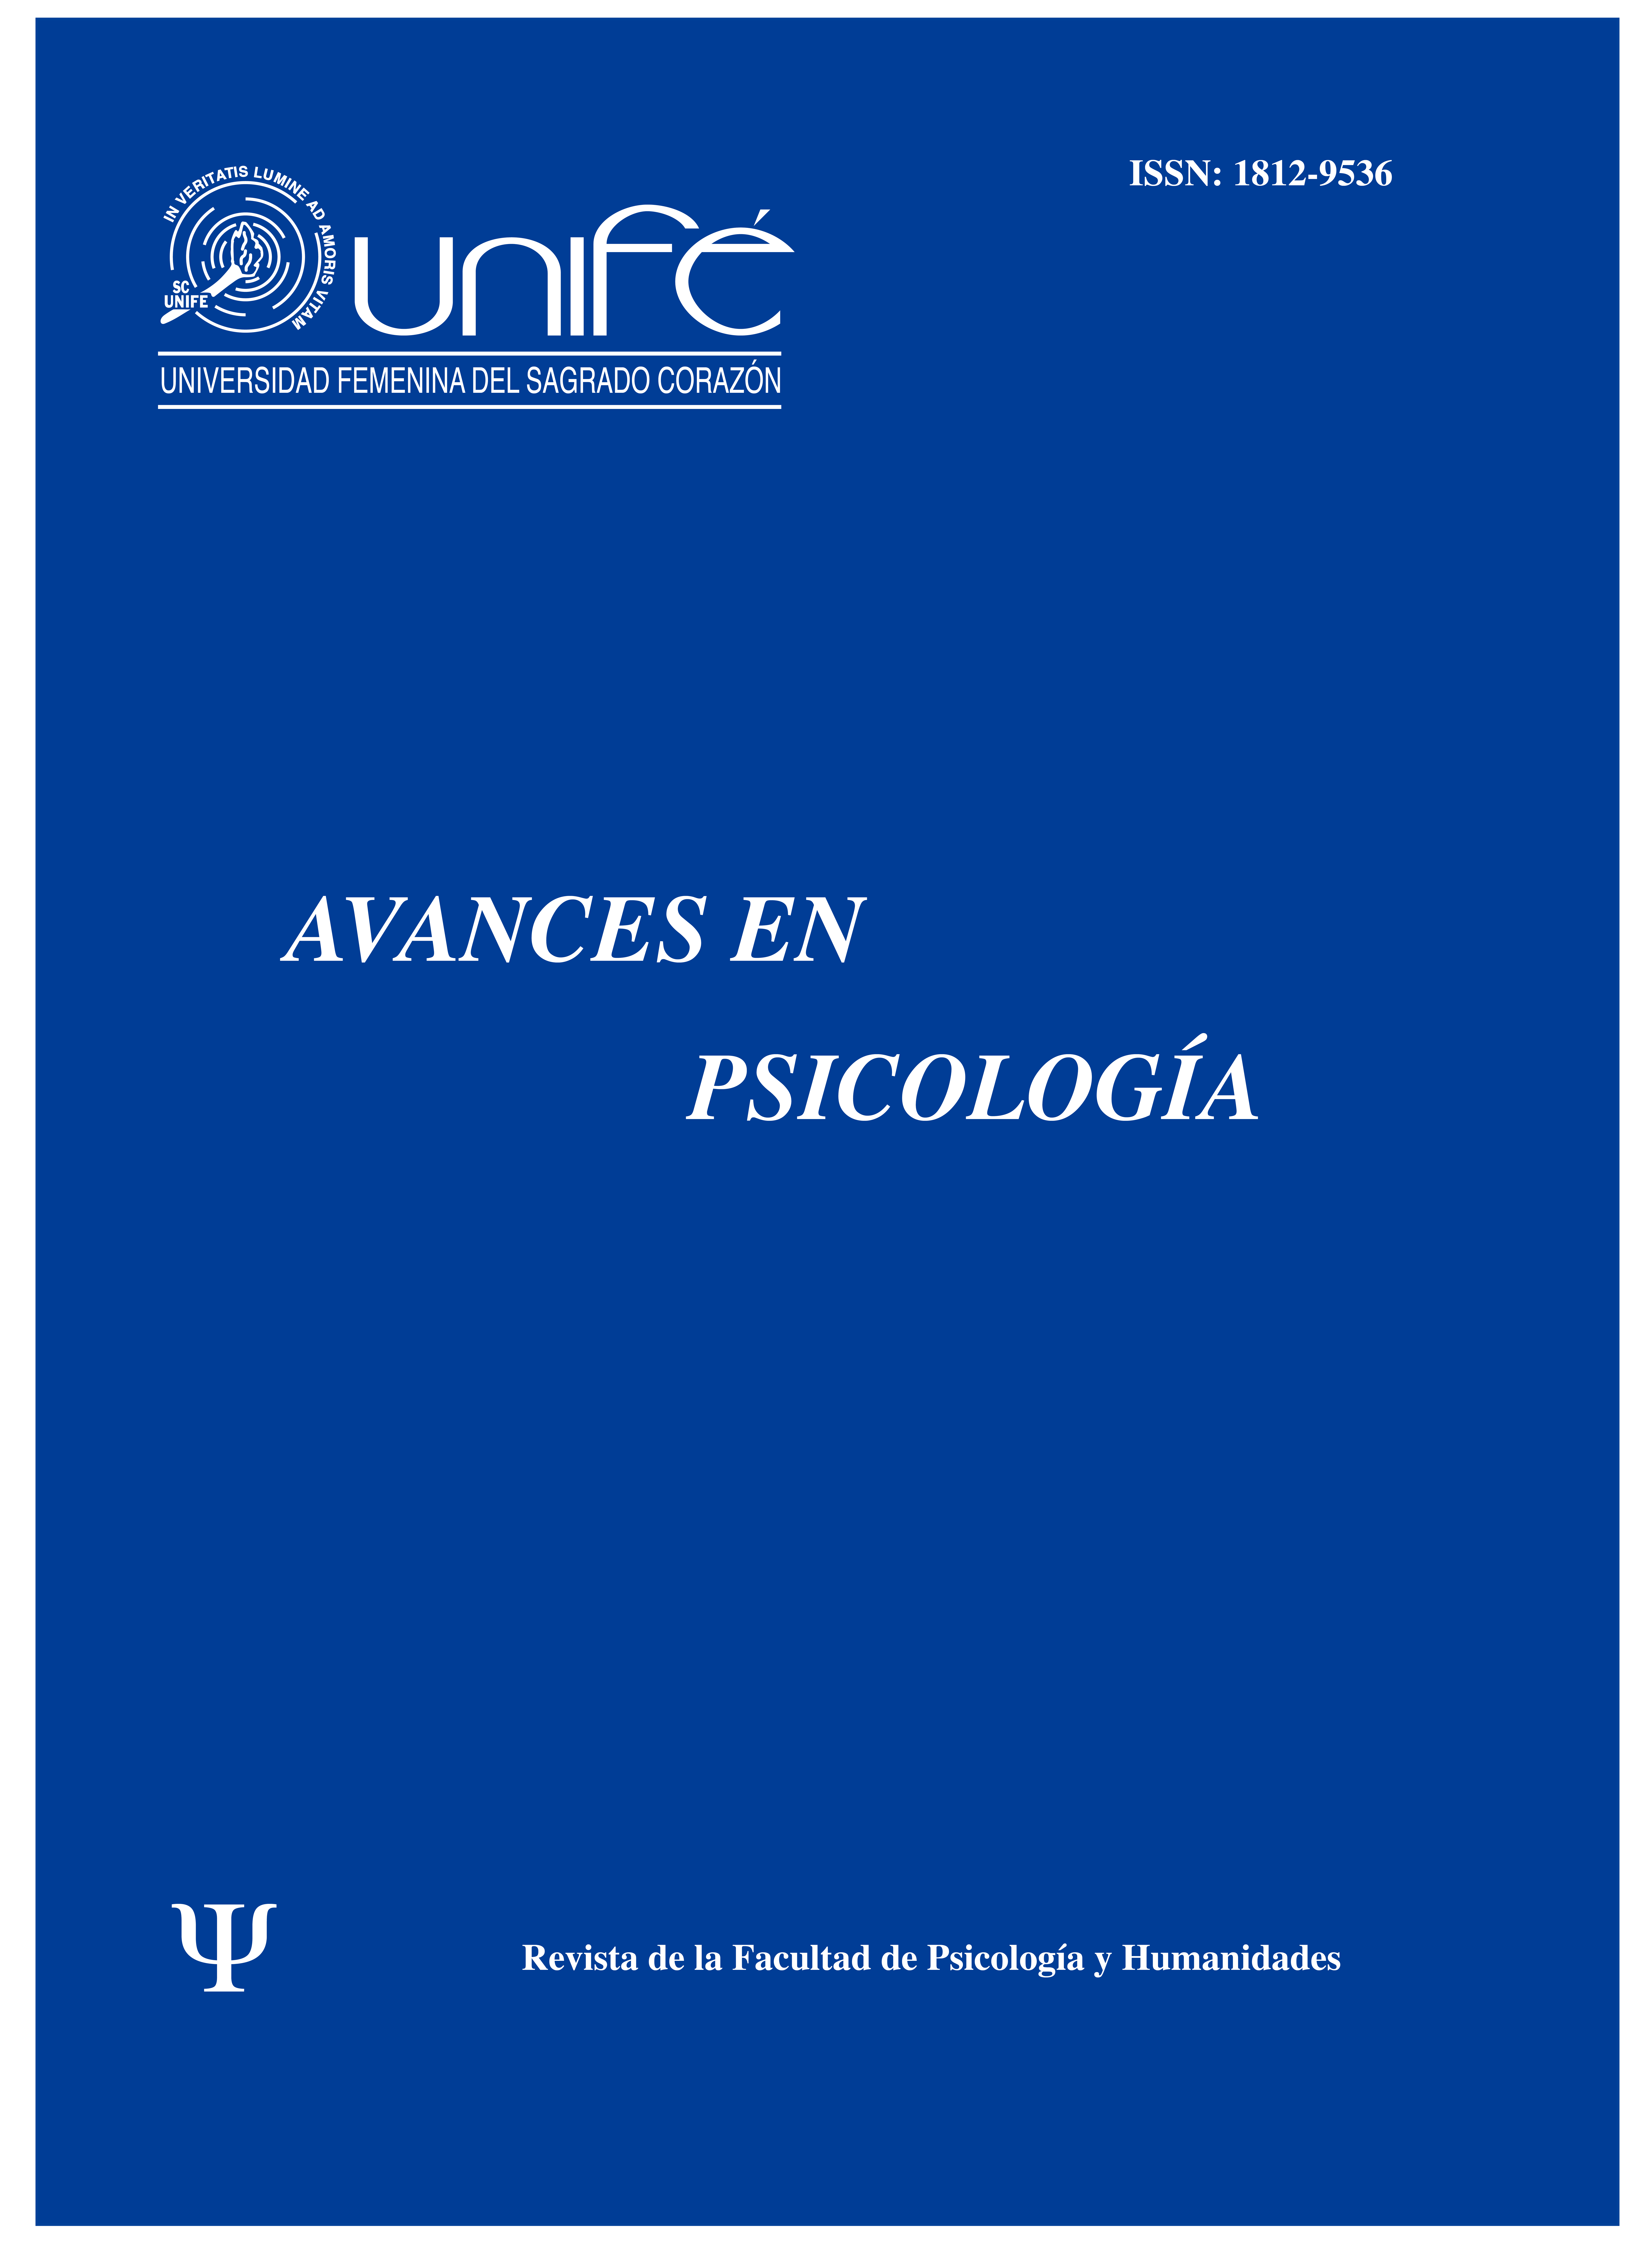 					Ver Vol. 24 Núm. 1 (2016): Avances en Psicología: Revista de la Facultad de Psicología y Humanidades
				